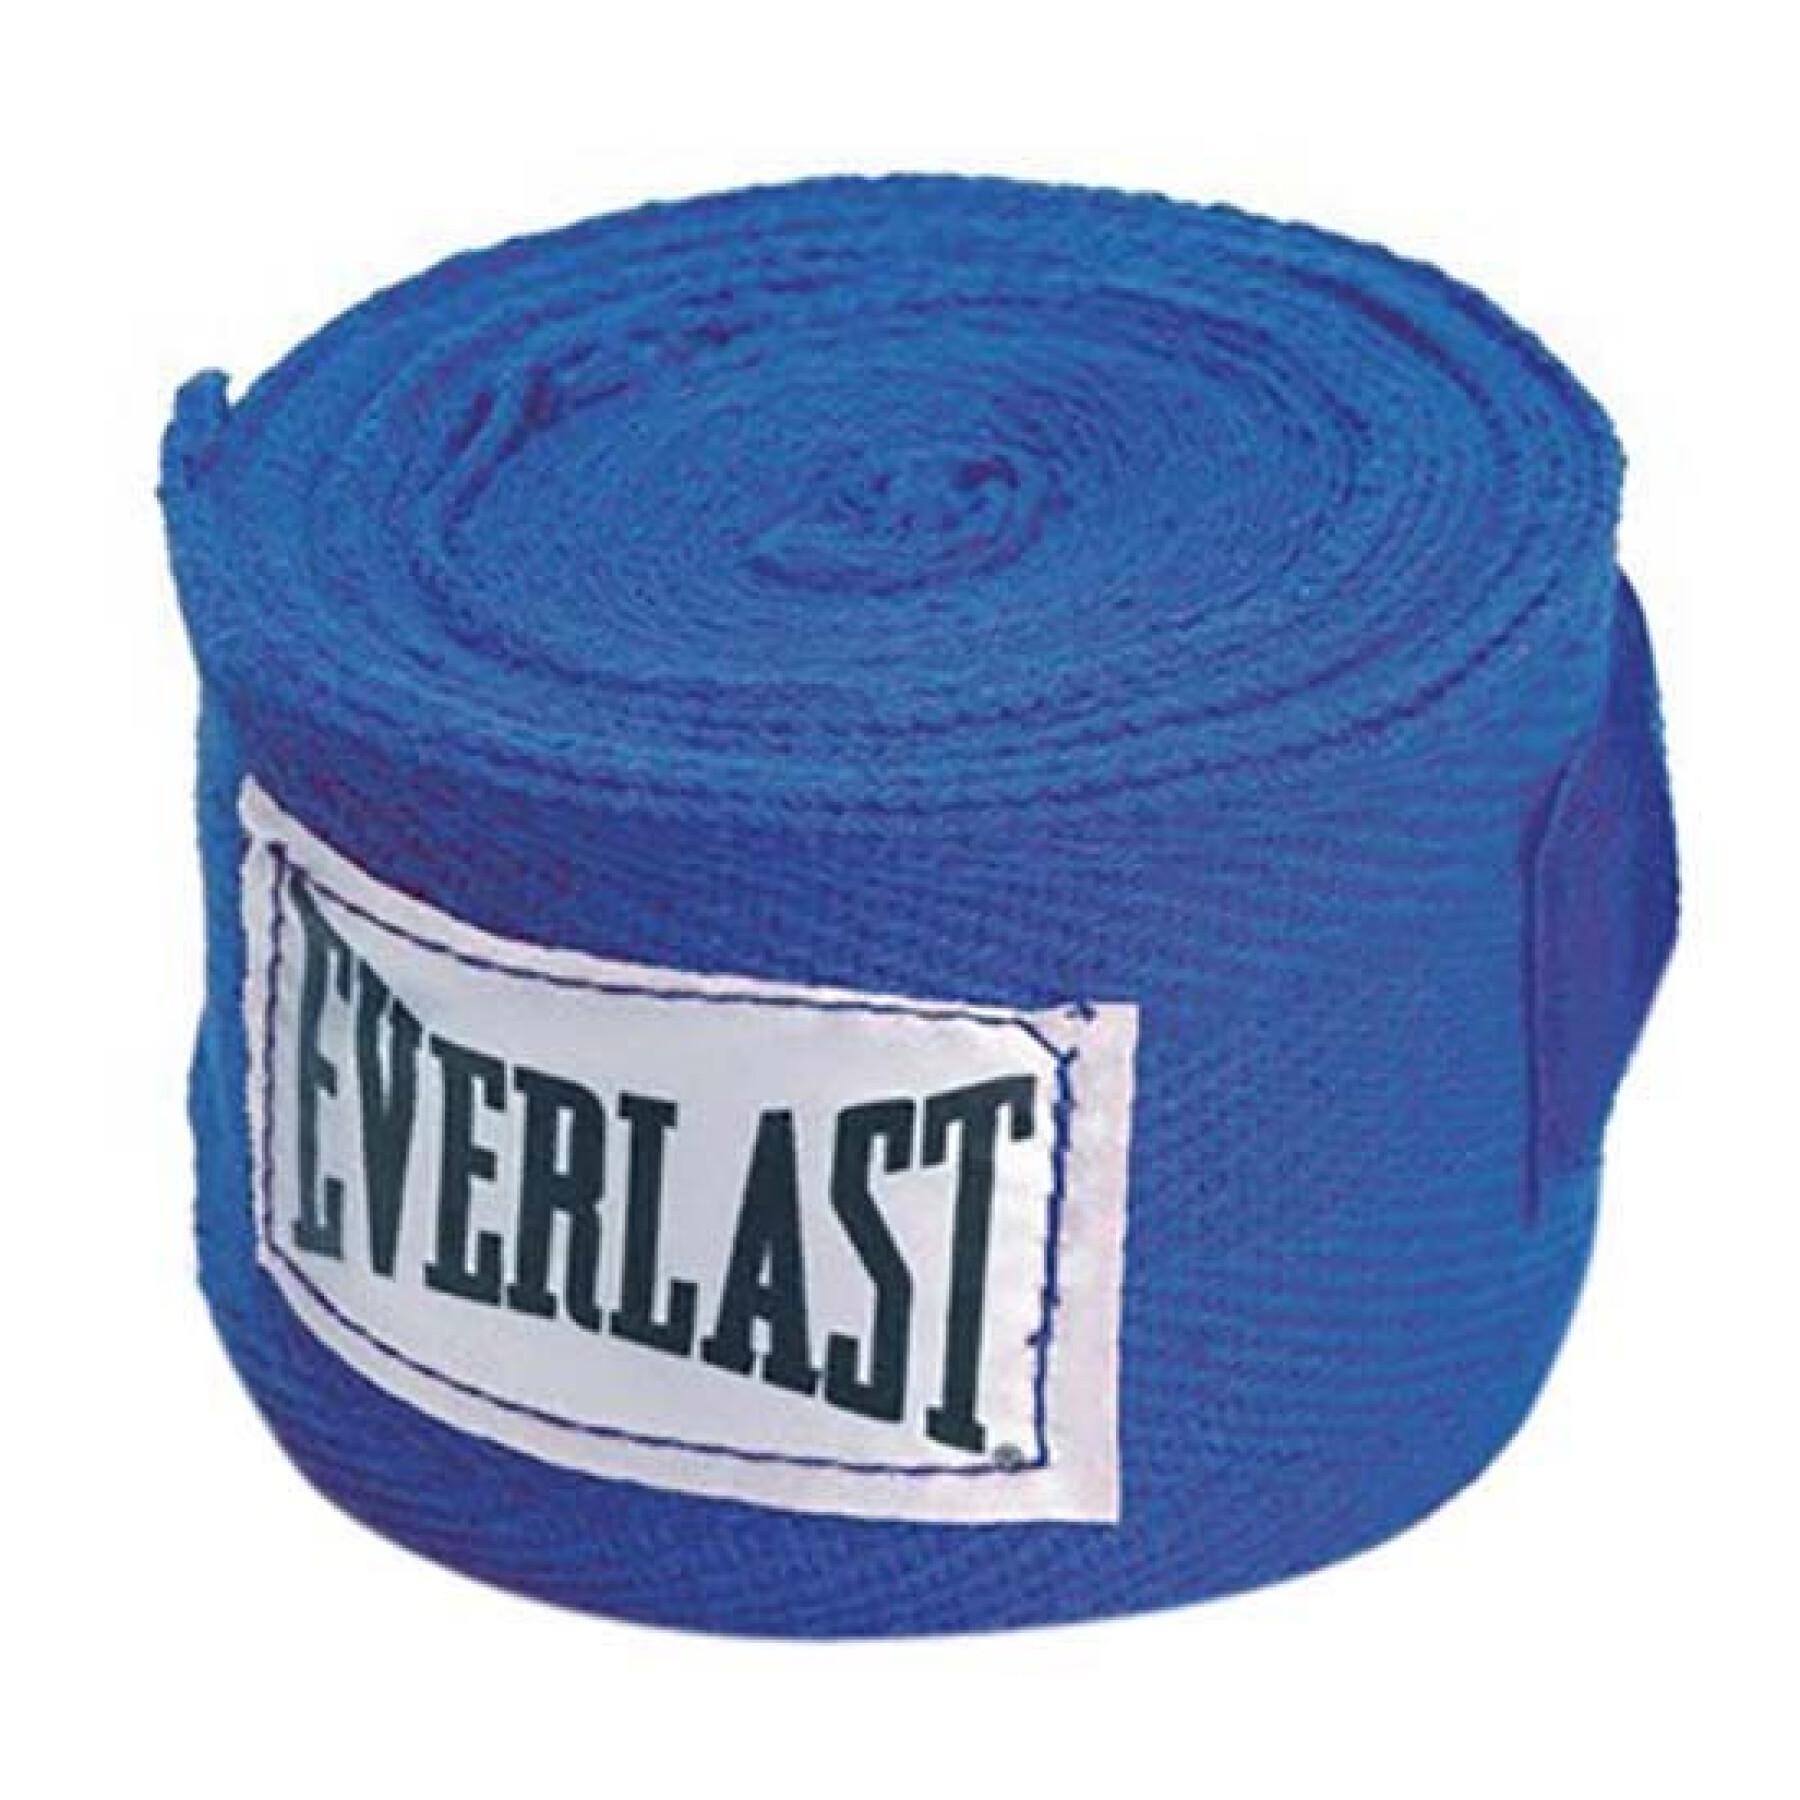 Handschützer Everlast bleu